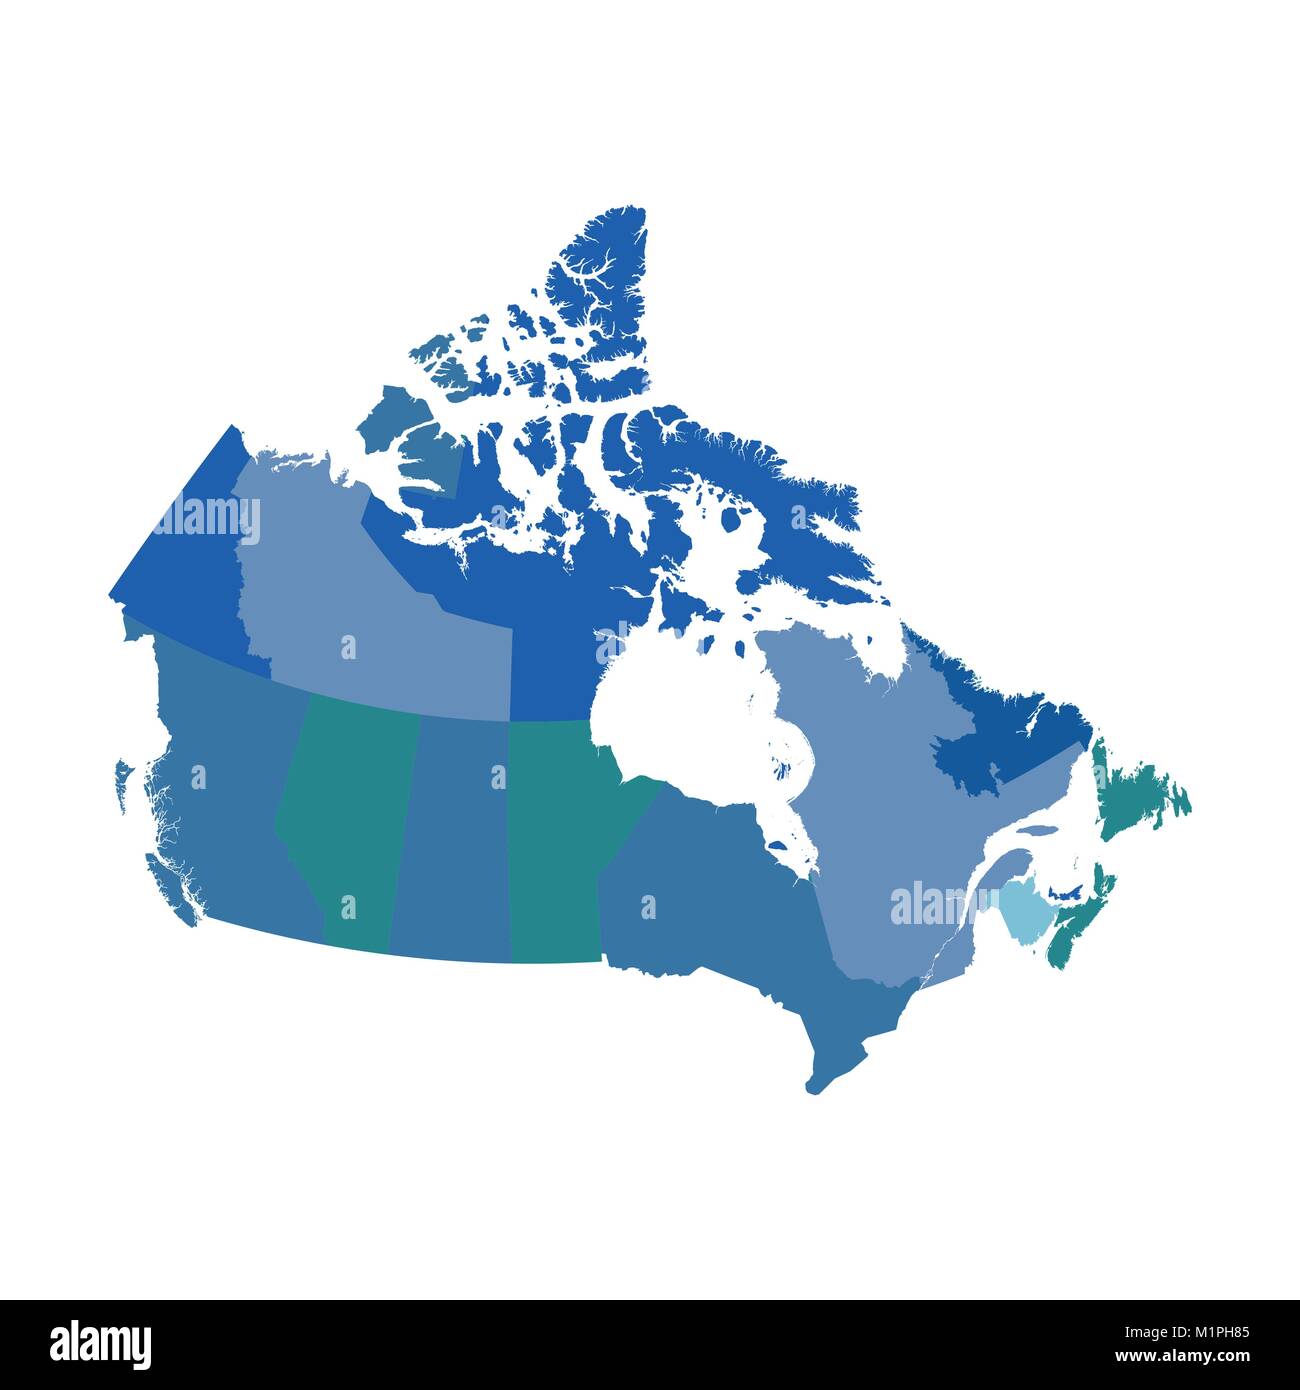 Canada political vector map Stock Vector